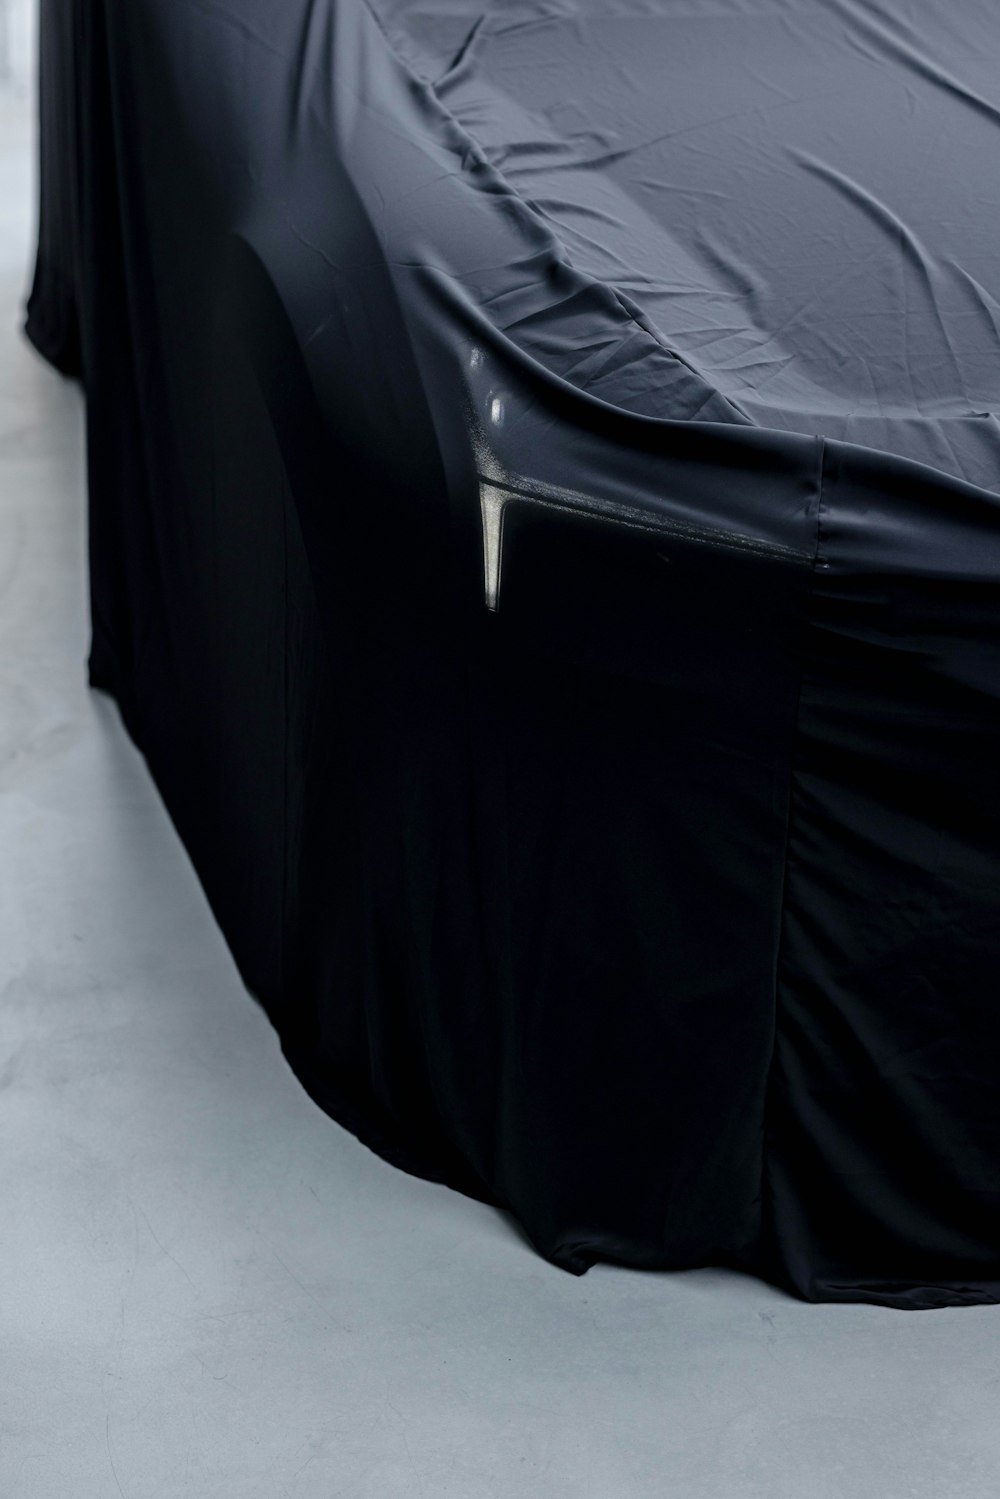 Un coche cubierto con una cubierta negra sentado encima de un piso blanco